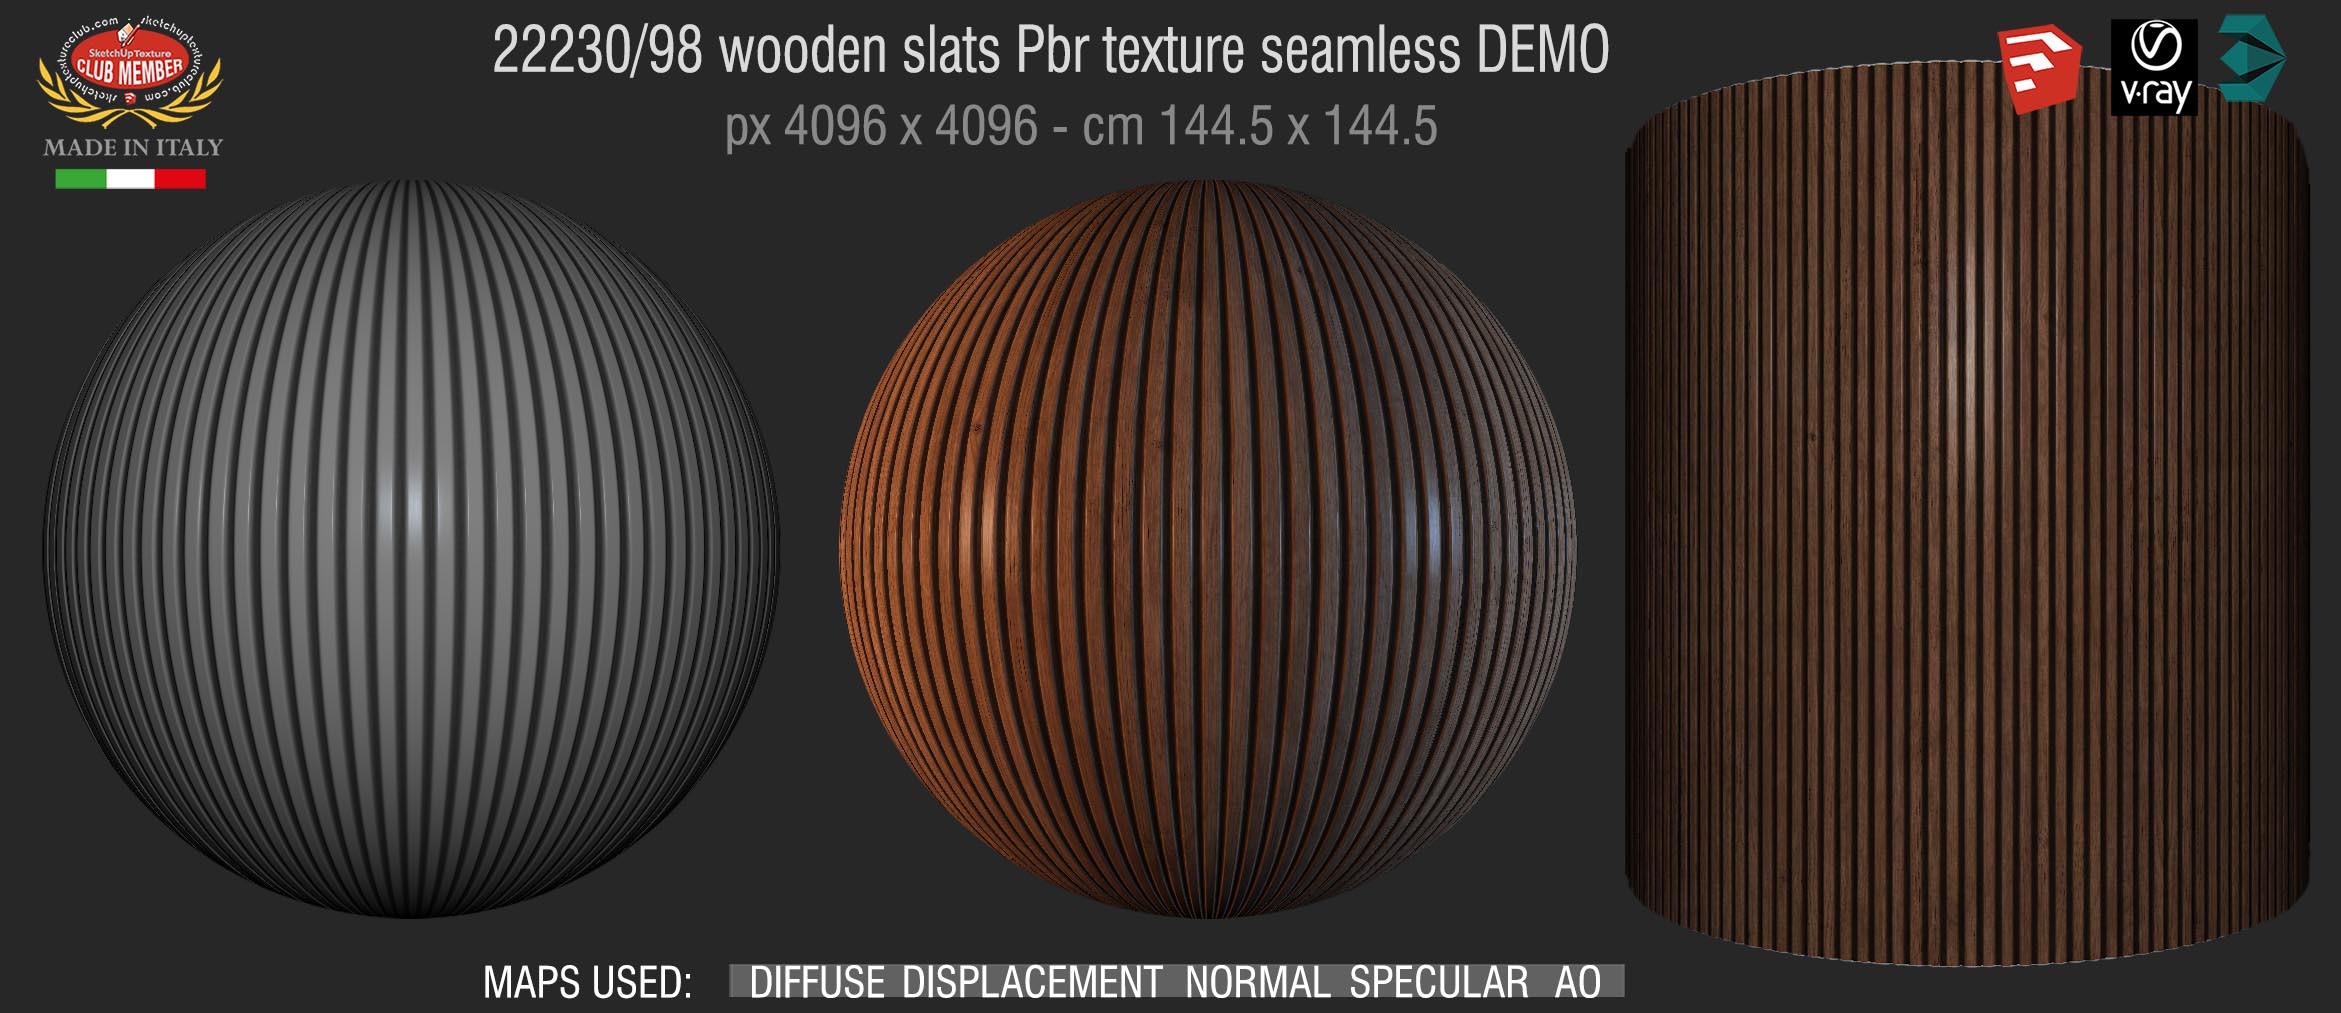 22230/98 wooden slats Pbr texture seamless DEMO